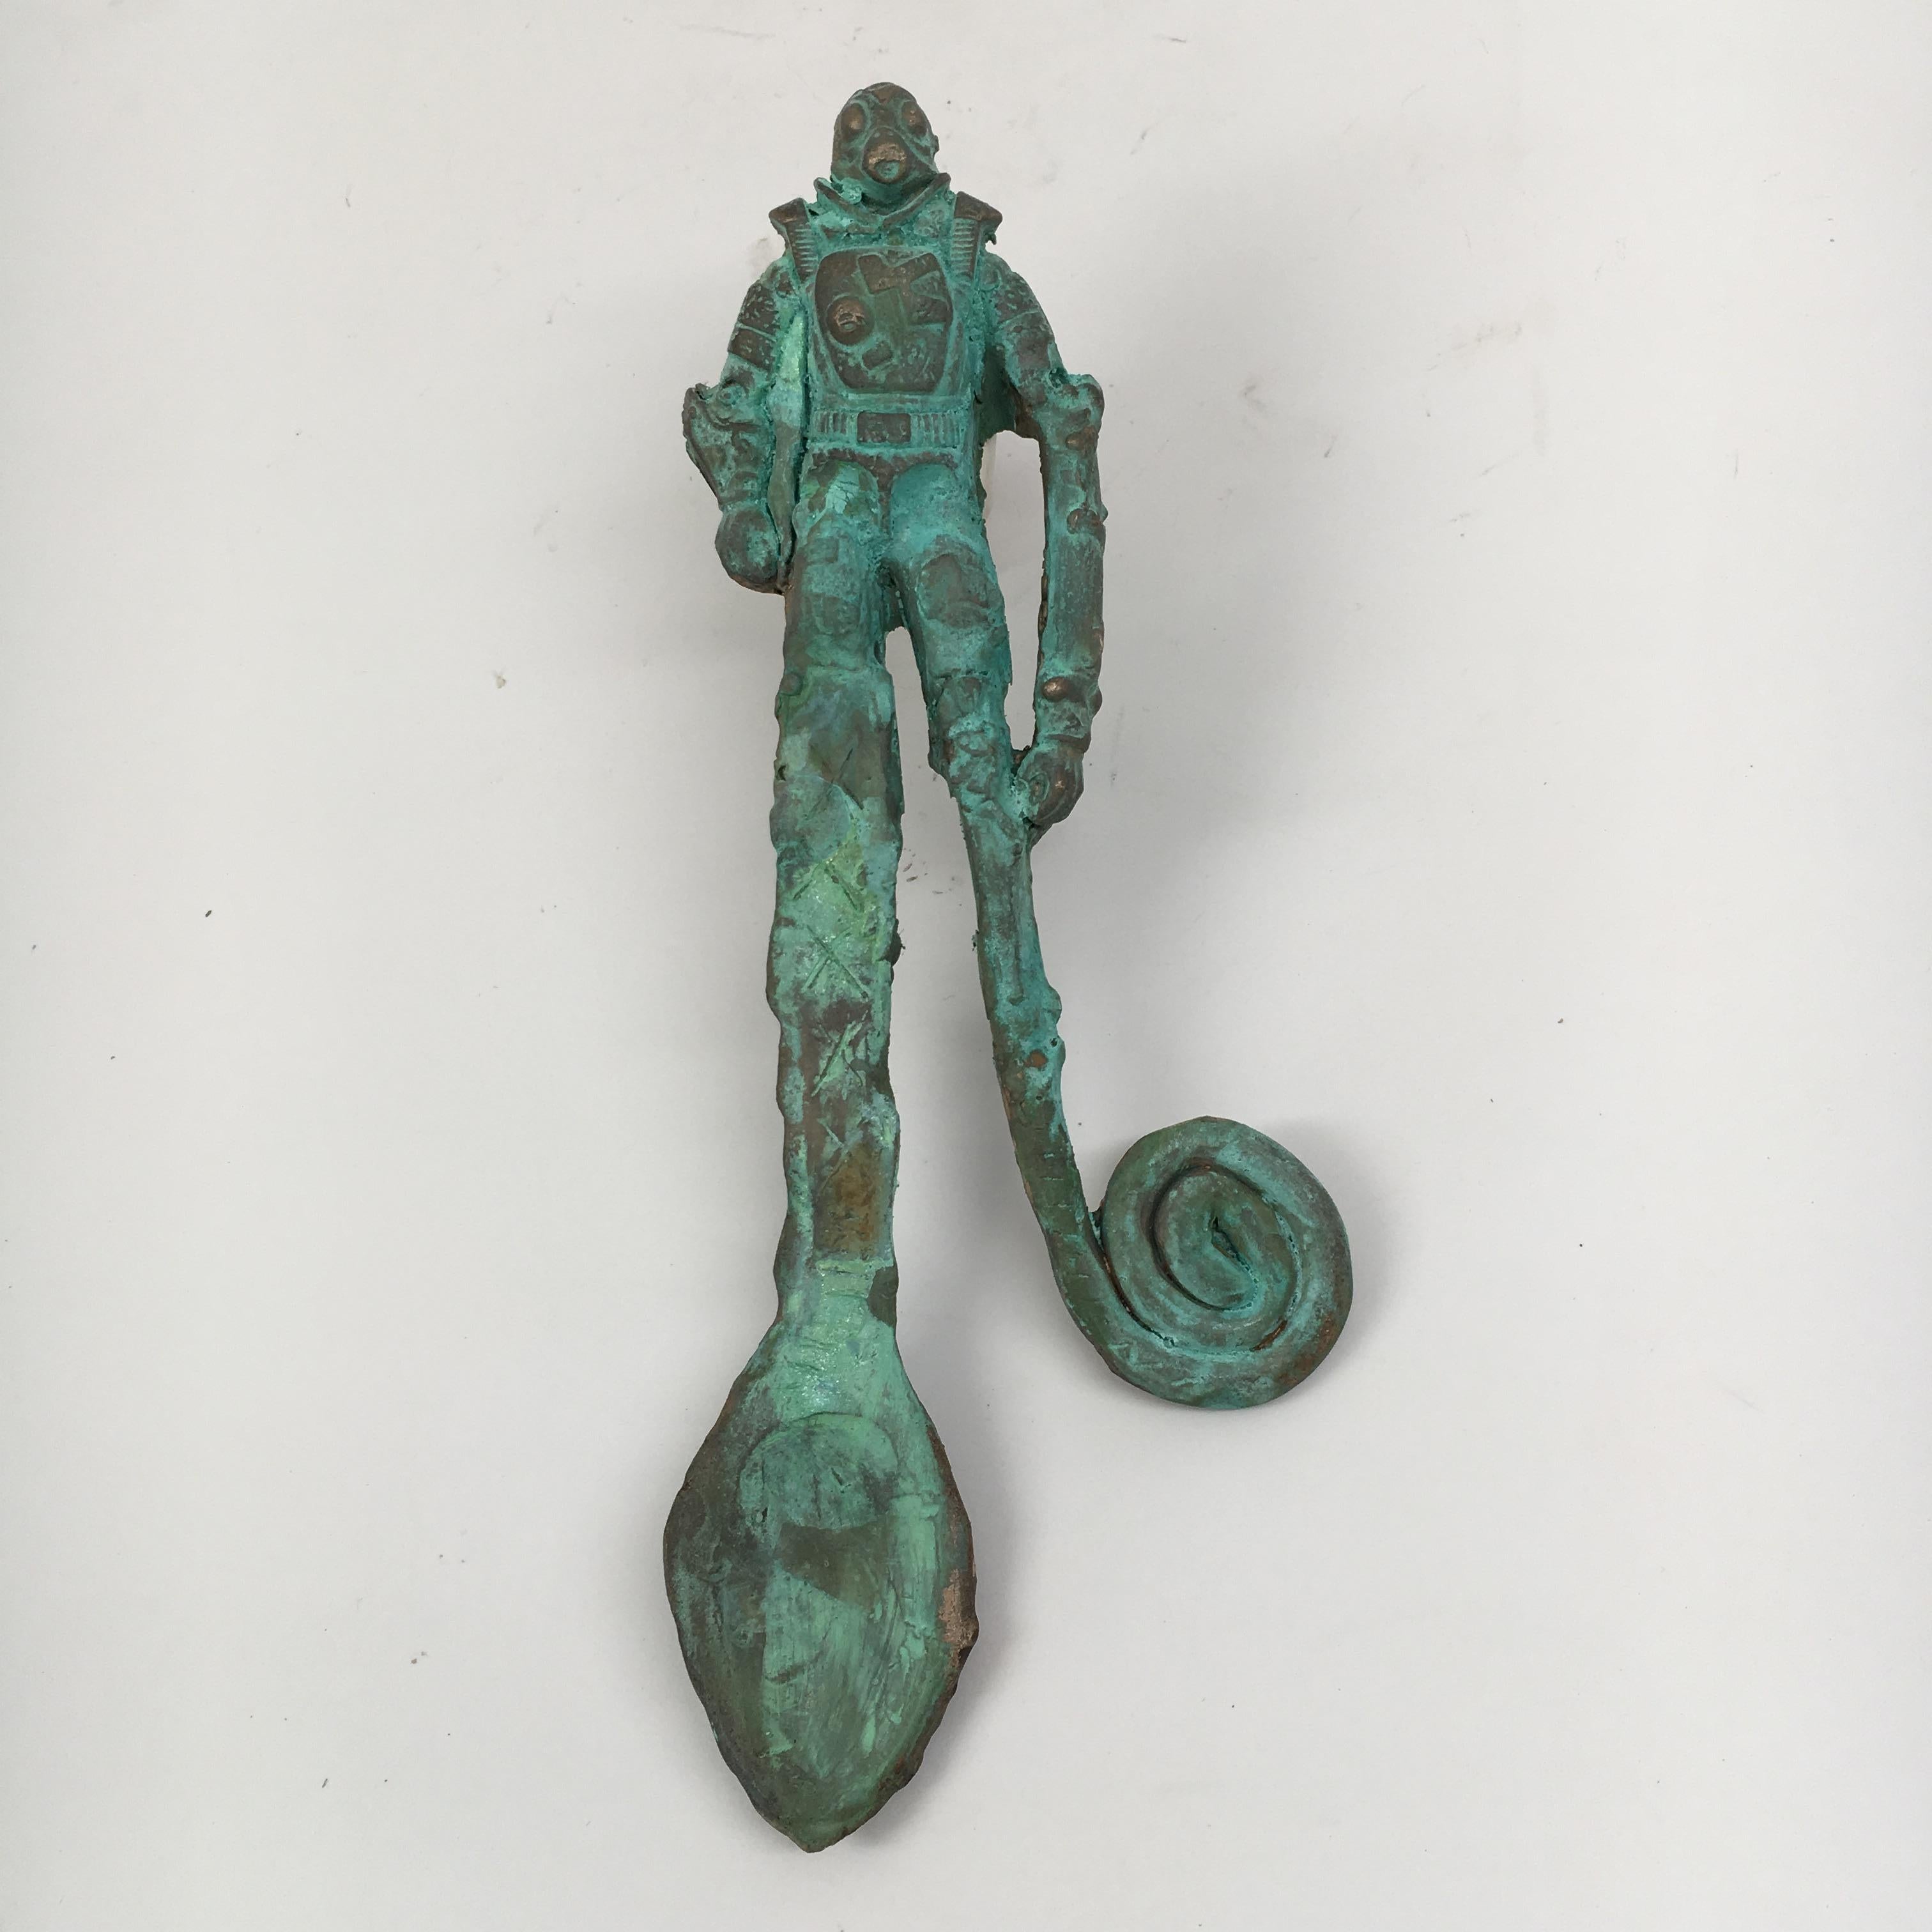 Bronze Sculpture: 'Rhoman Ceremonial Lovers’ Spoon II'